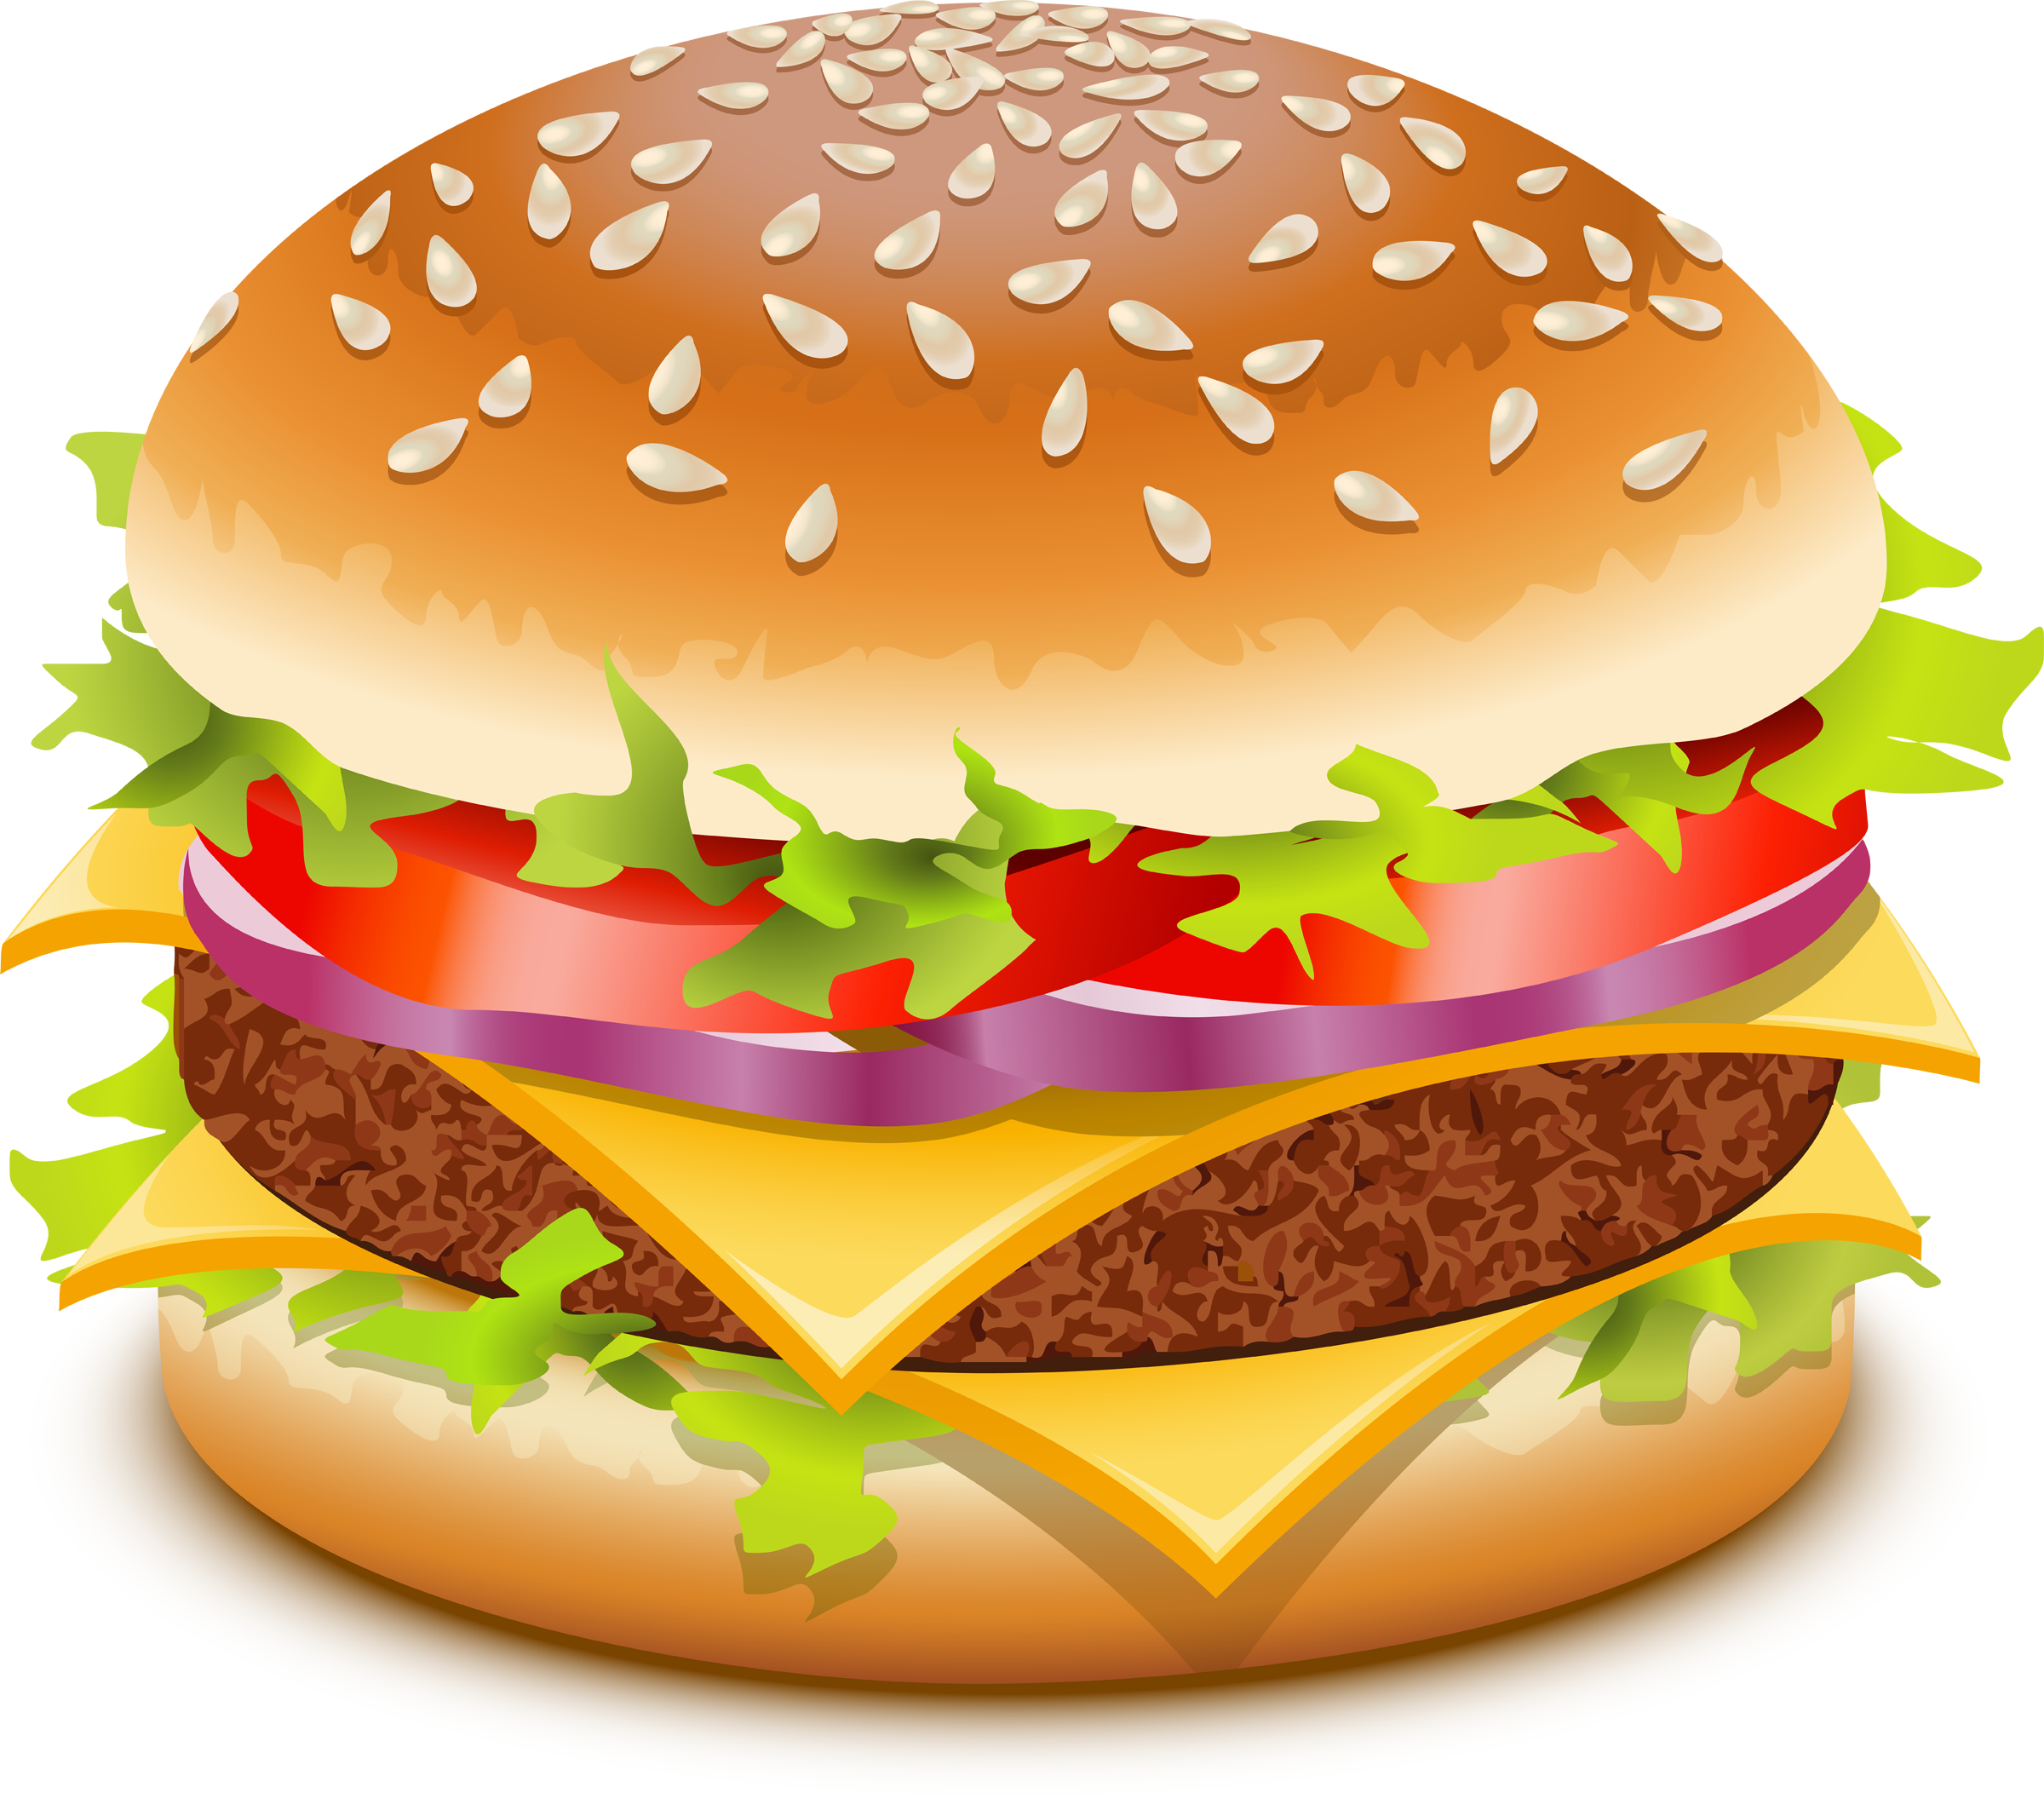 Hamburger Clip Art Clipart Be